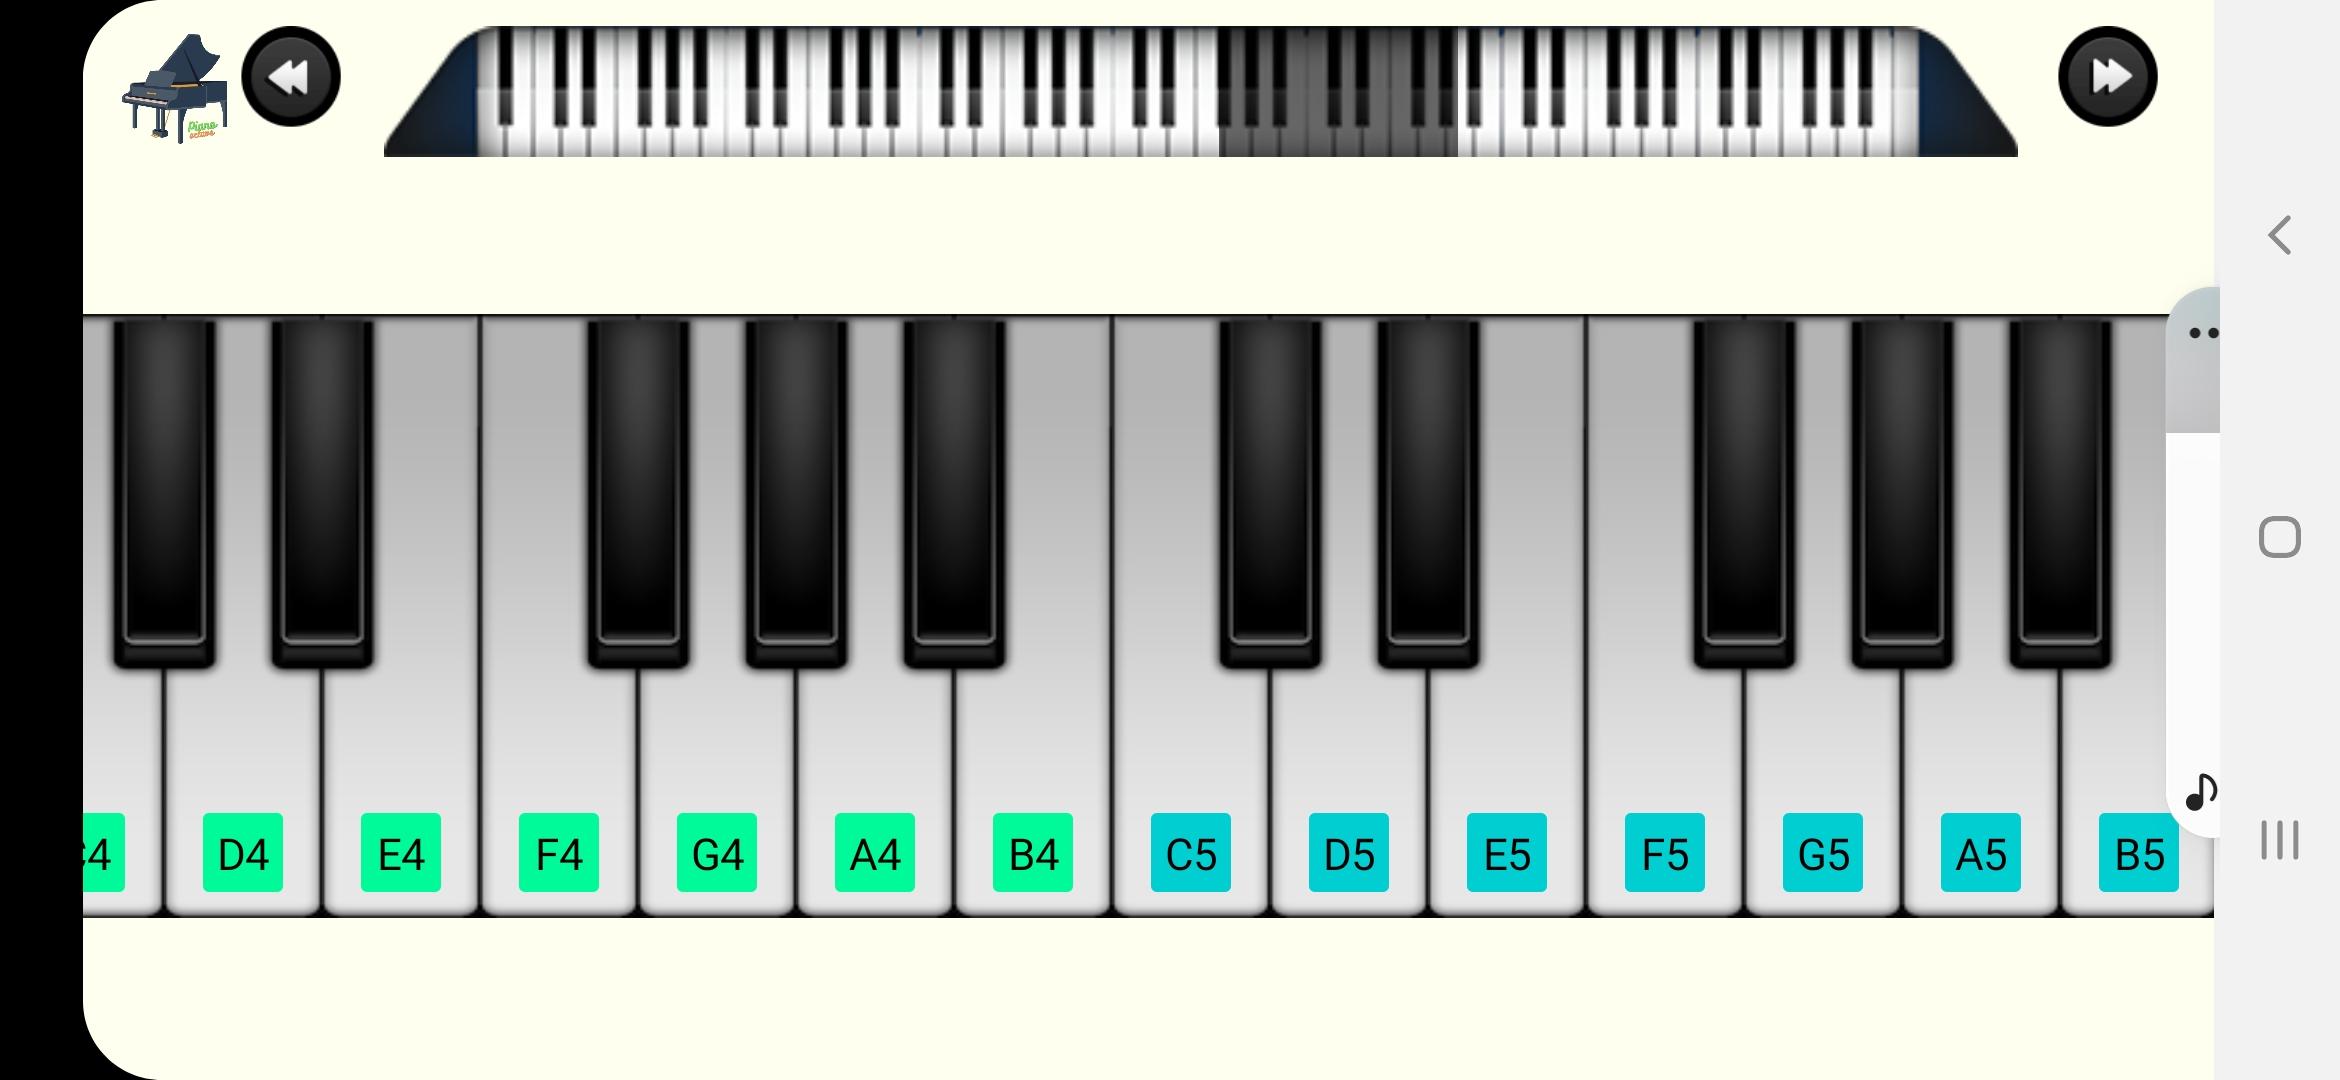 Perfect Piano - Baixar APK para Android